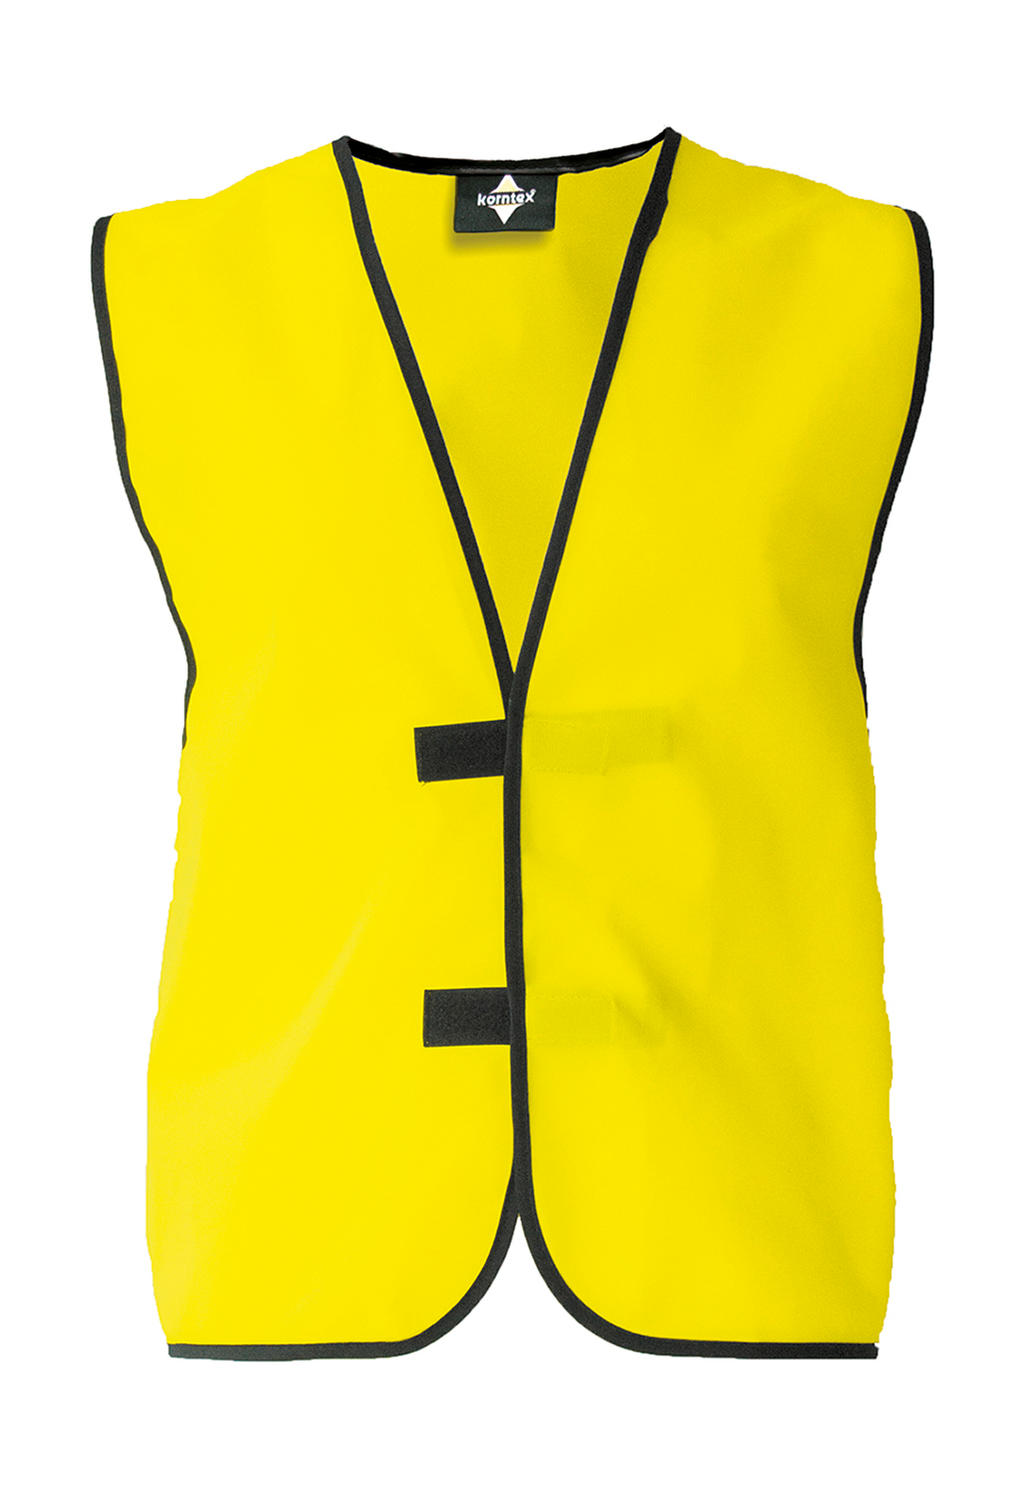 Identifikačná vesta "Leipzig" - yellow